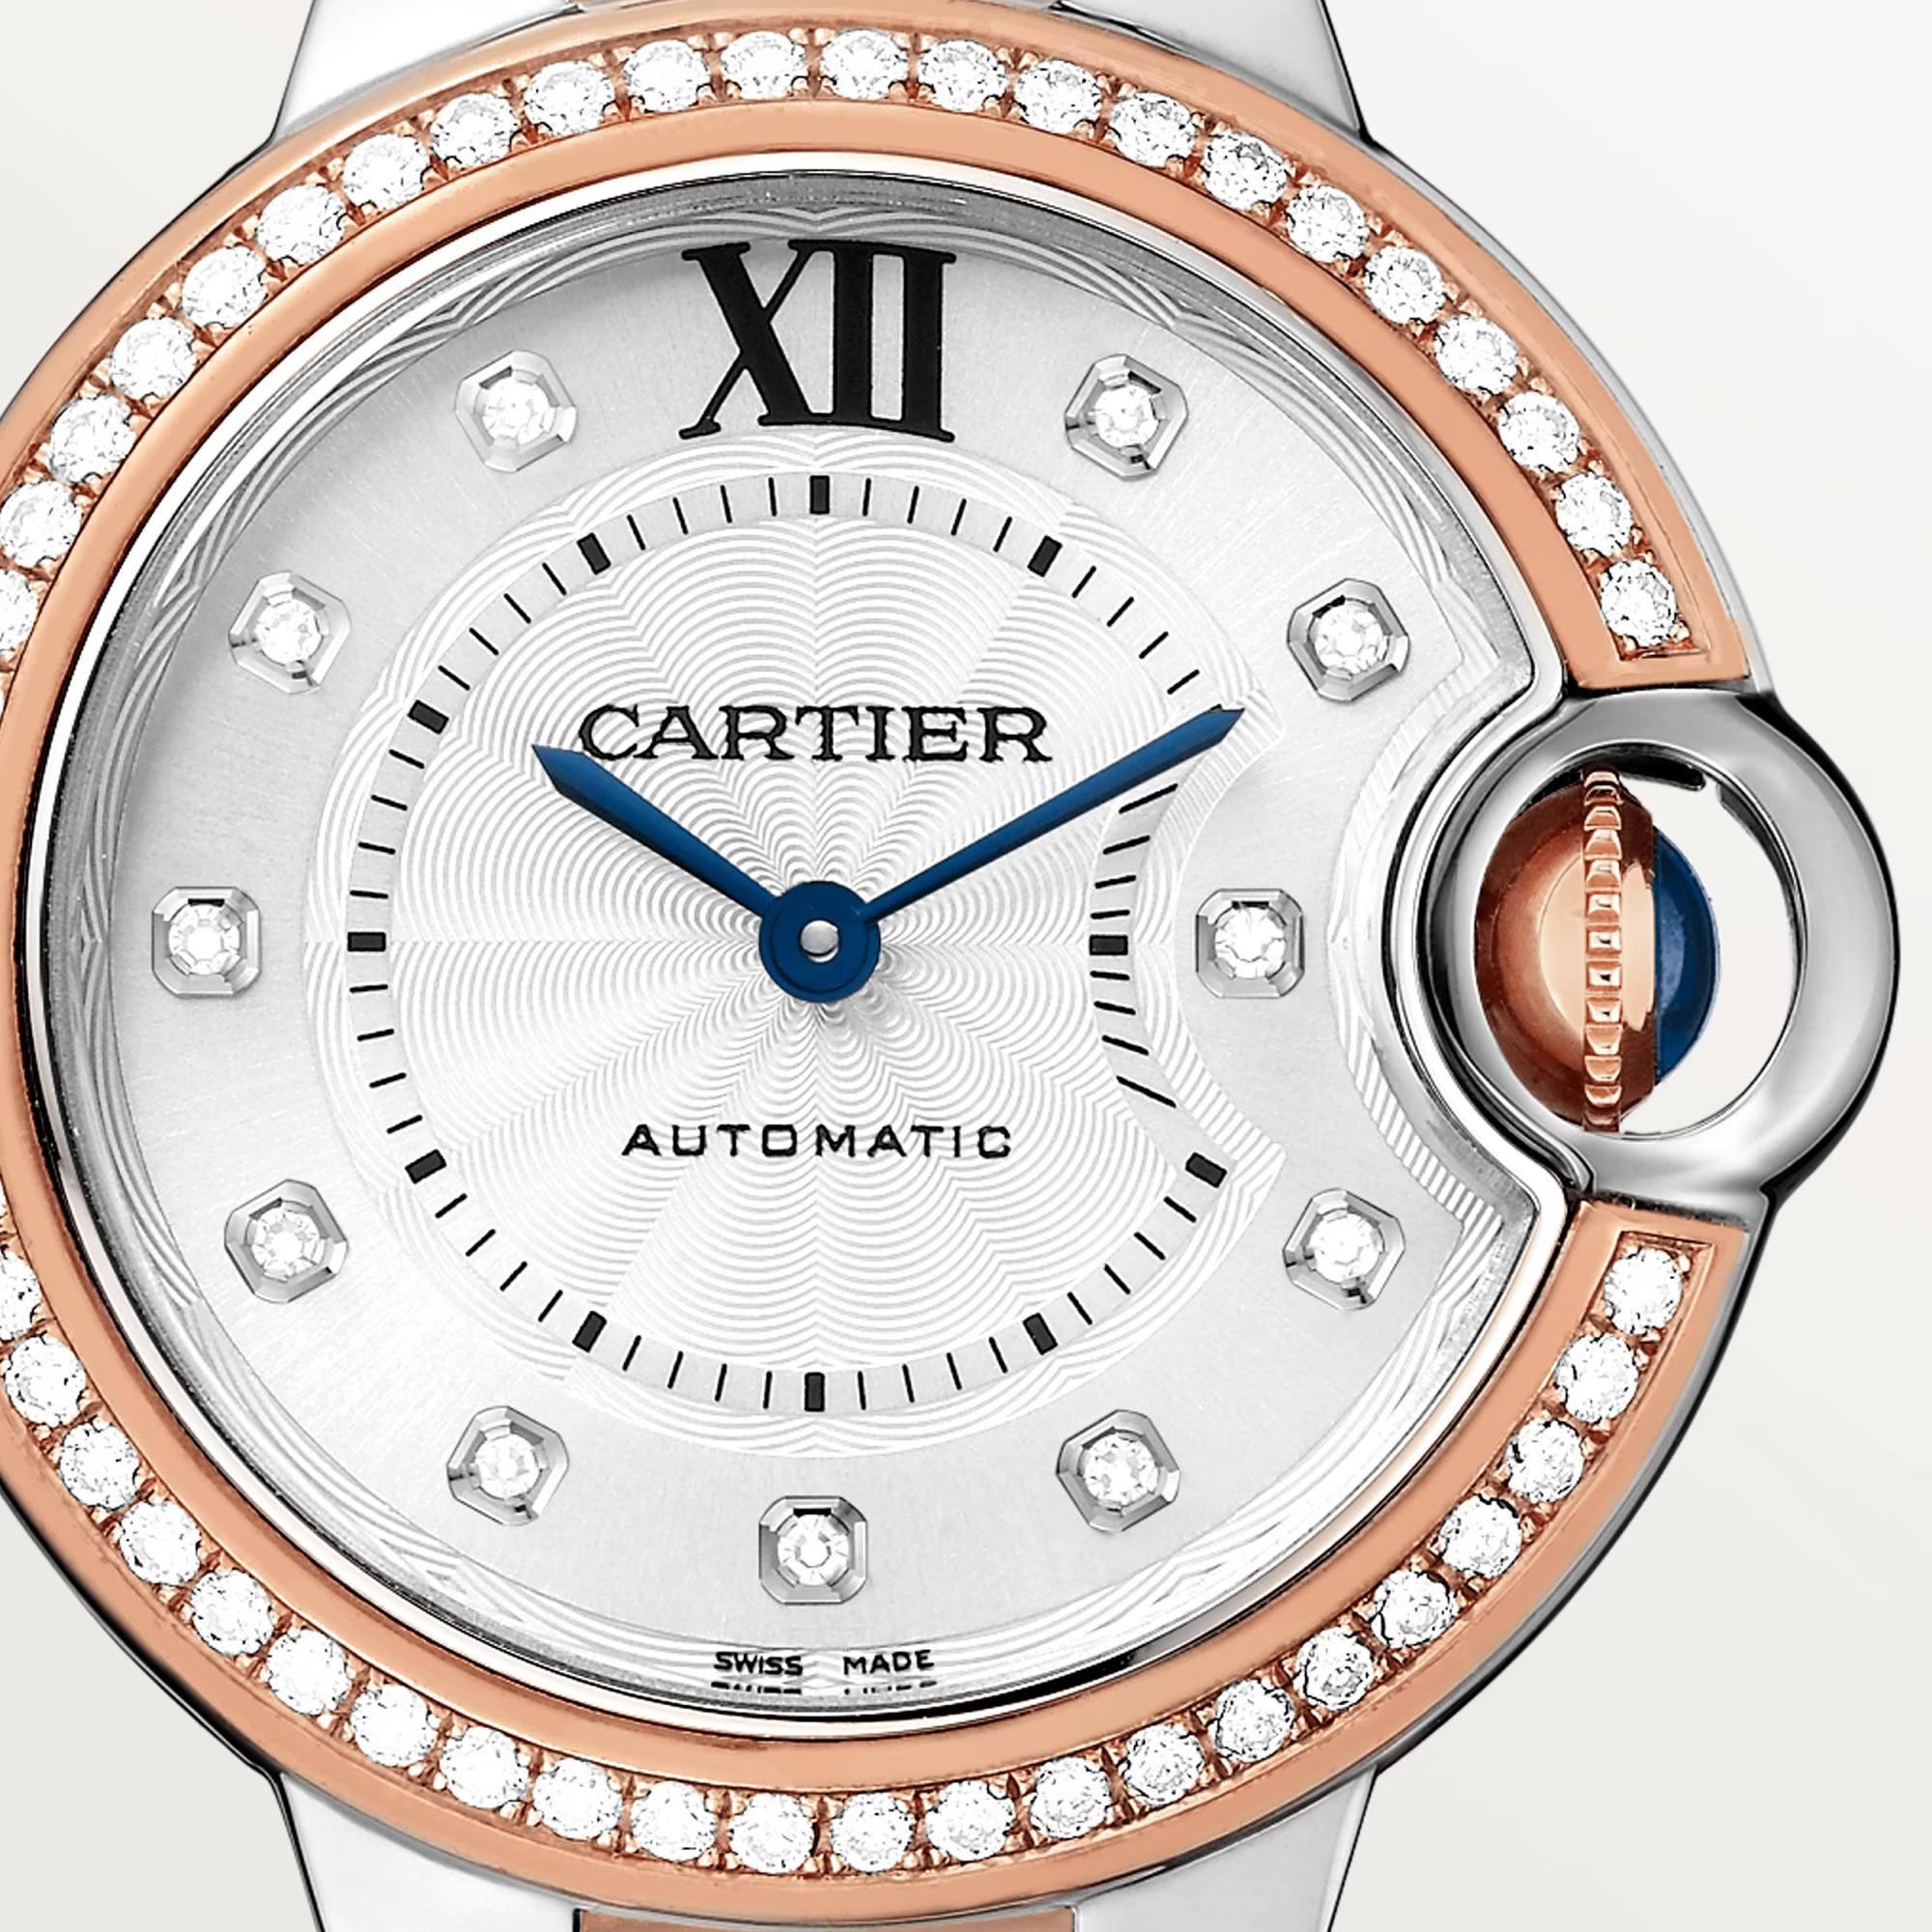 Ballon Bleu de Cartier Watch with Rose Gold and Diamonds, 33mm 3